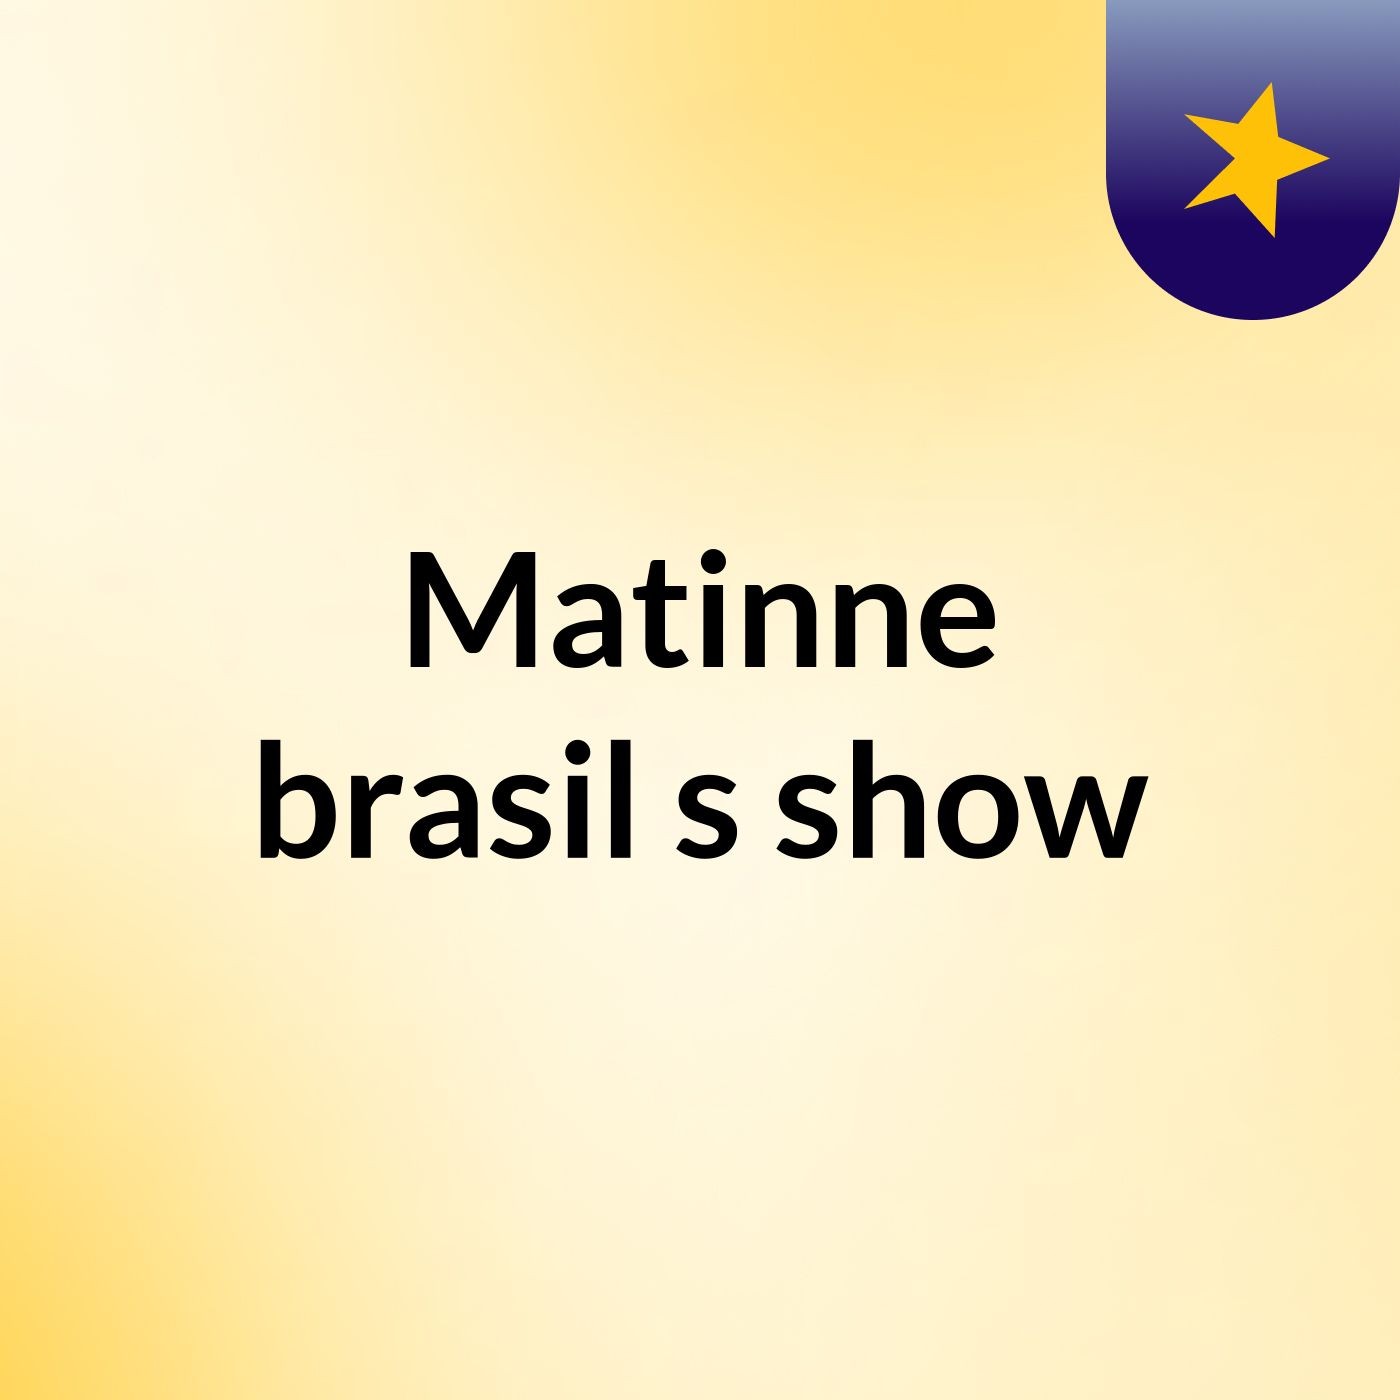 Matinne brasil's show